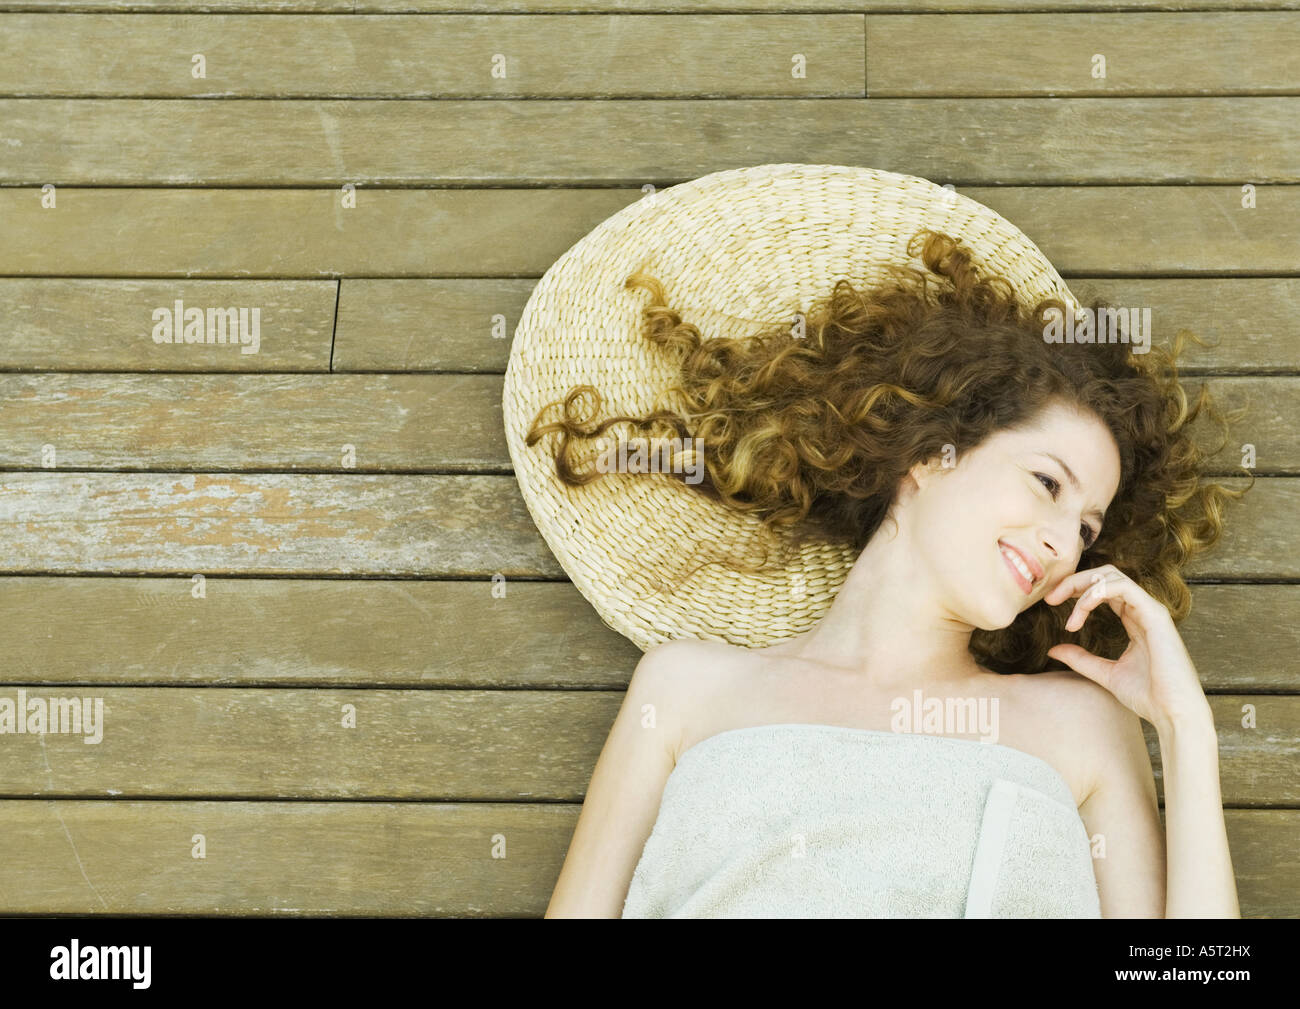 Femme enveloppée dans une serviette, allongé sur le pont, smiling Banque D'Images